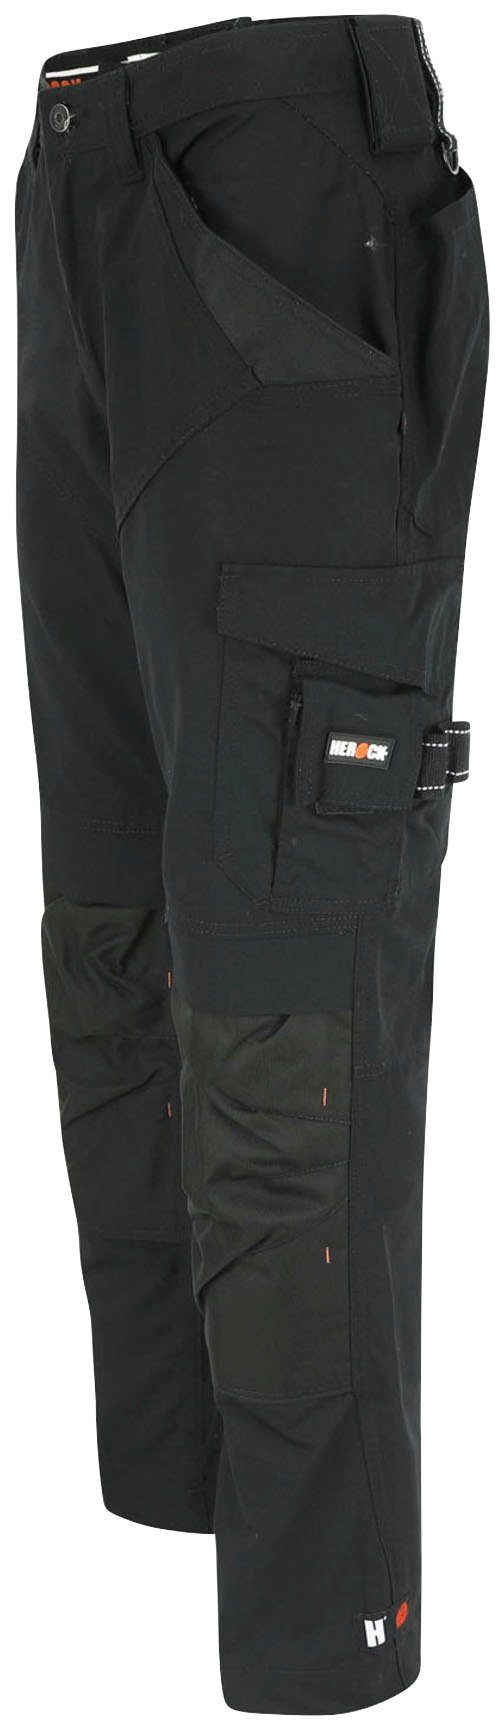 8 leicht schwarz Wasserabweisend bequem & Regelbarer Taschen Arbeitshose - - - Herock Apollo Bund Hose